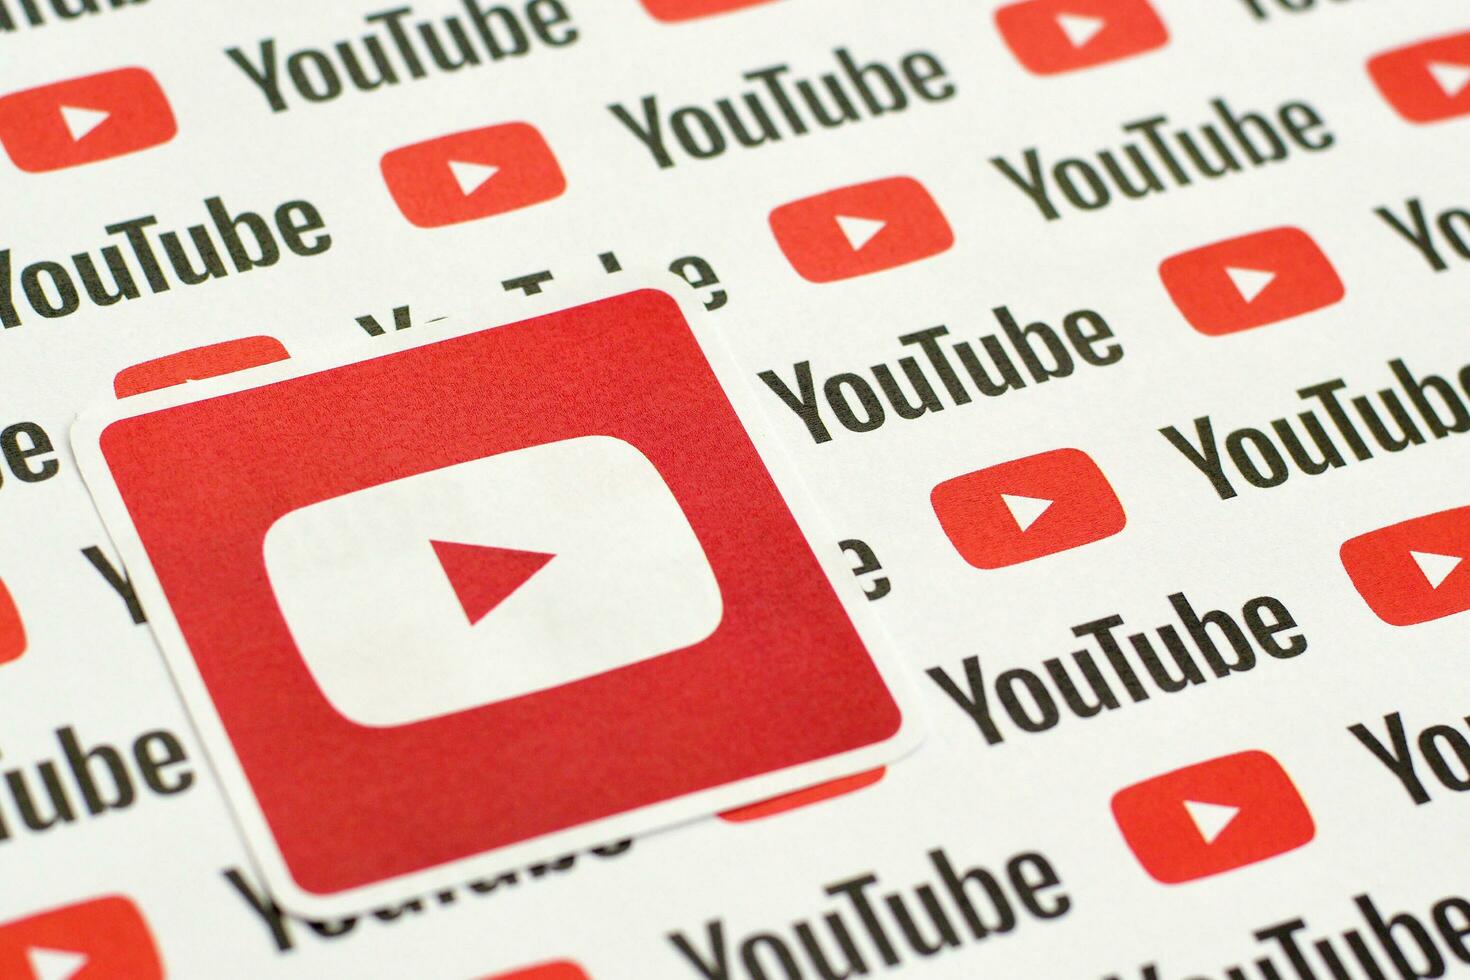 Youtube logo etichetta su modello stampato su carta con piccolo Youtube loghi e iscrizioni. Youtube è Google filiale e americano maggior parte popolare condivisione video piattaforma foto